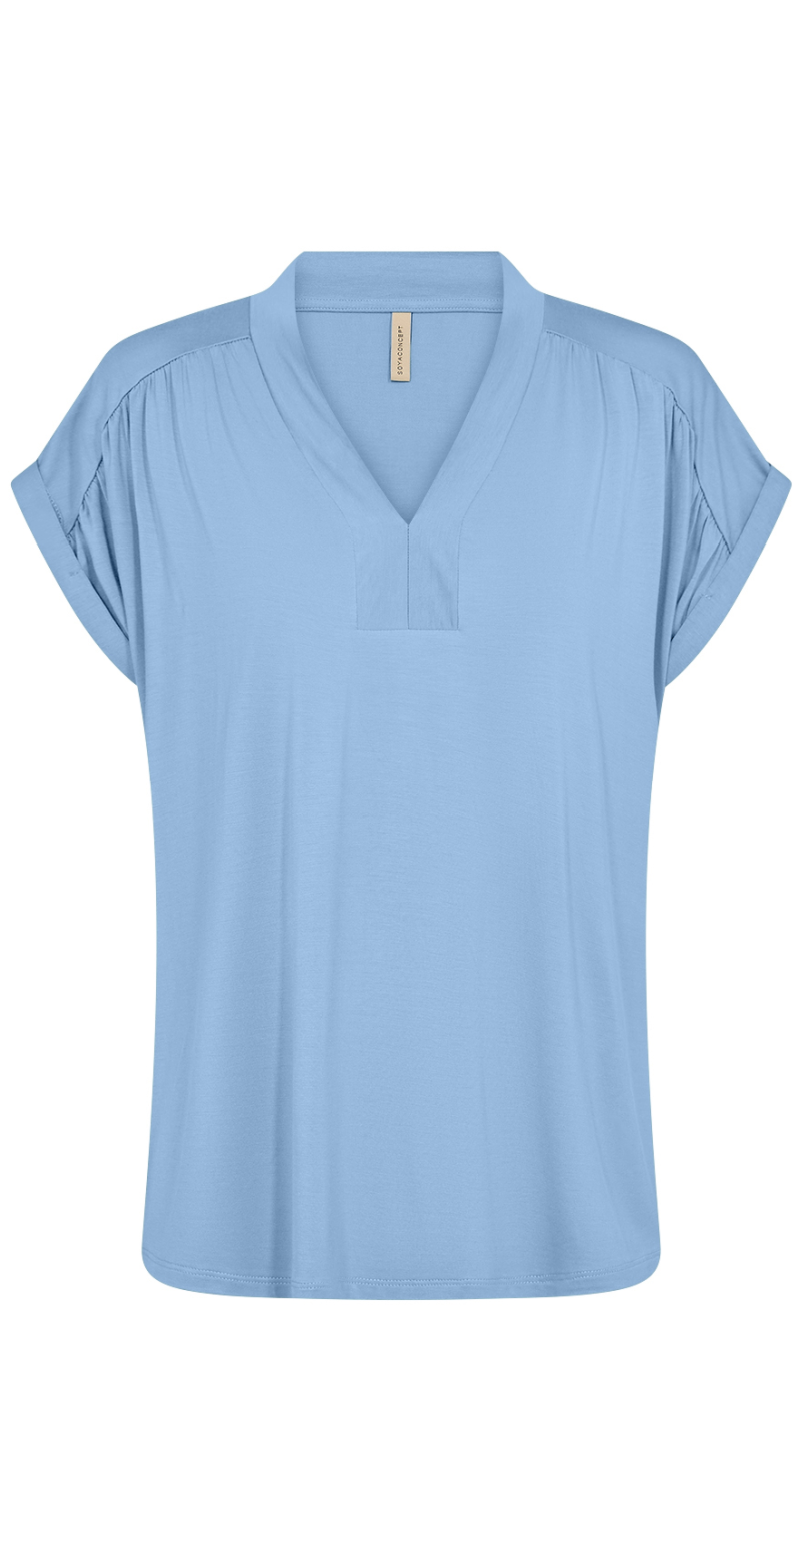  T-shirt med v-hals og opsmøg på ærmet lysblå foran